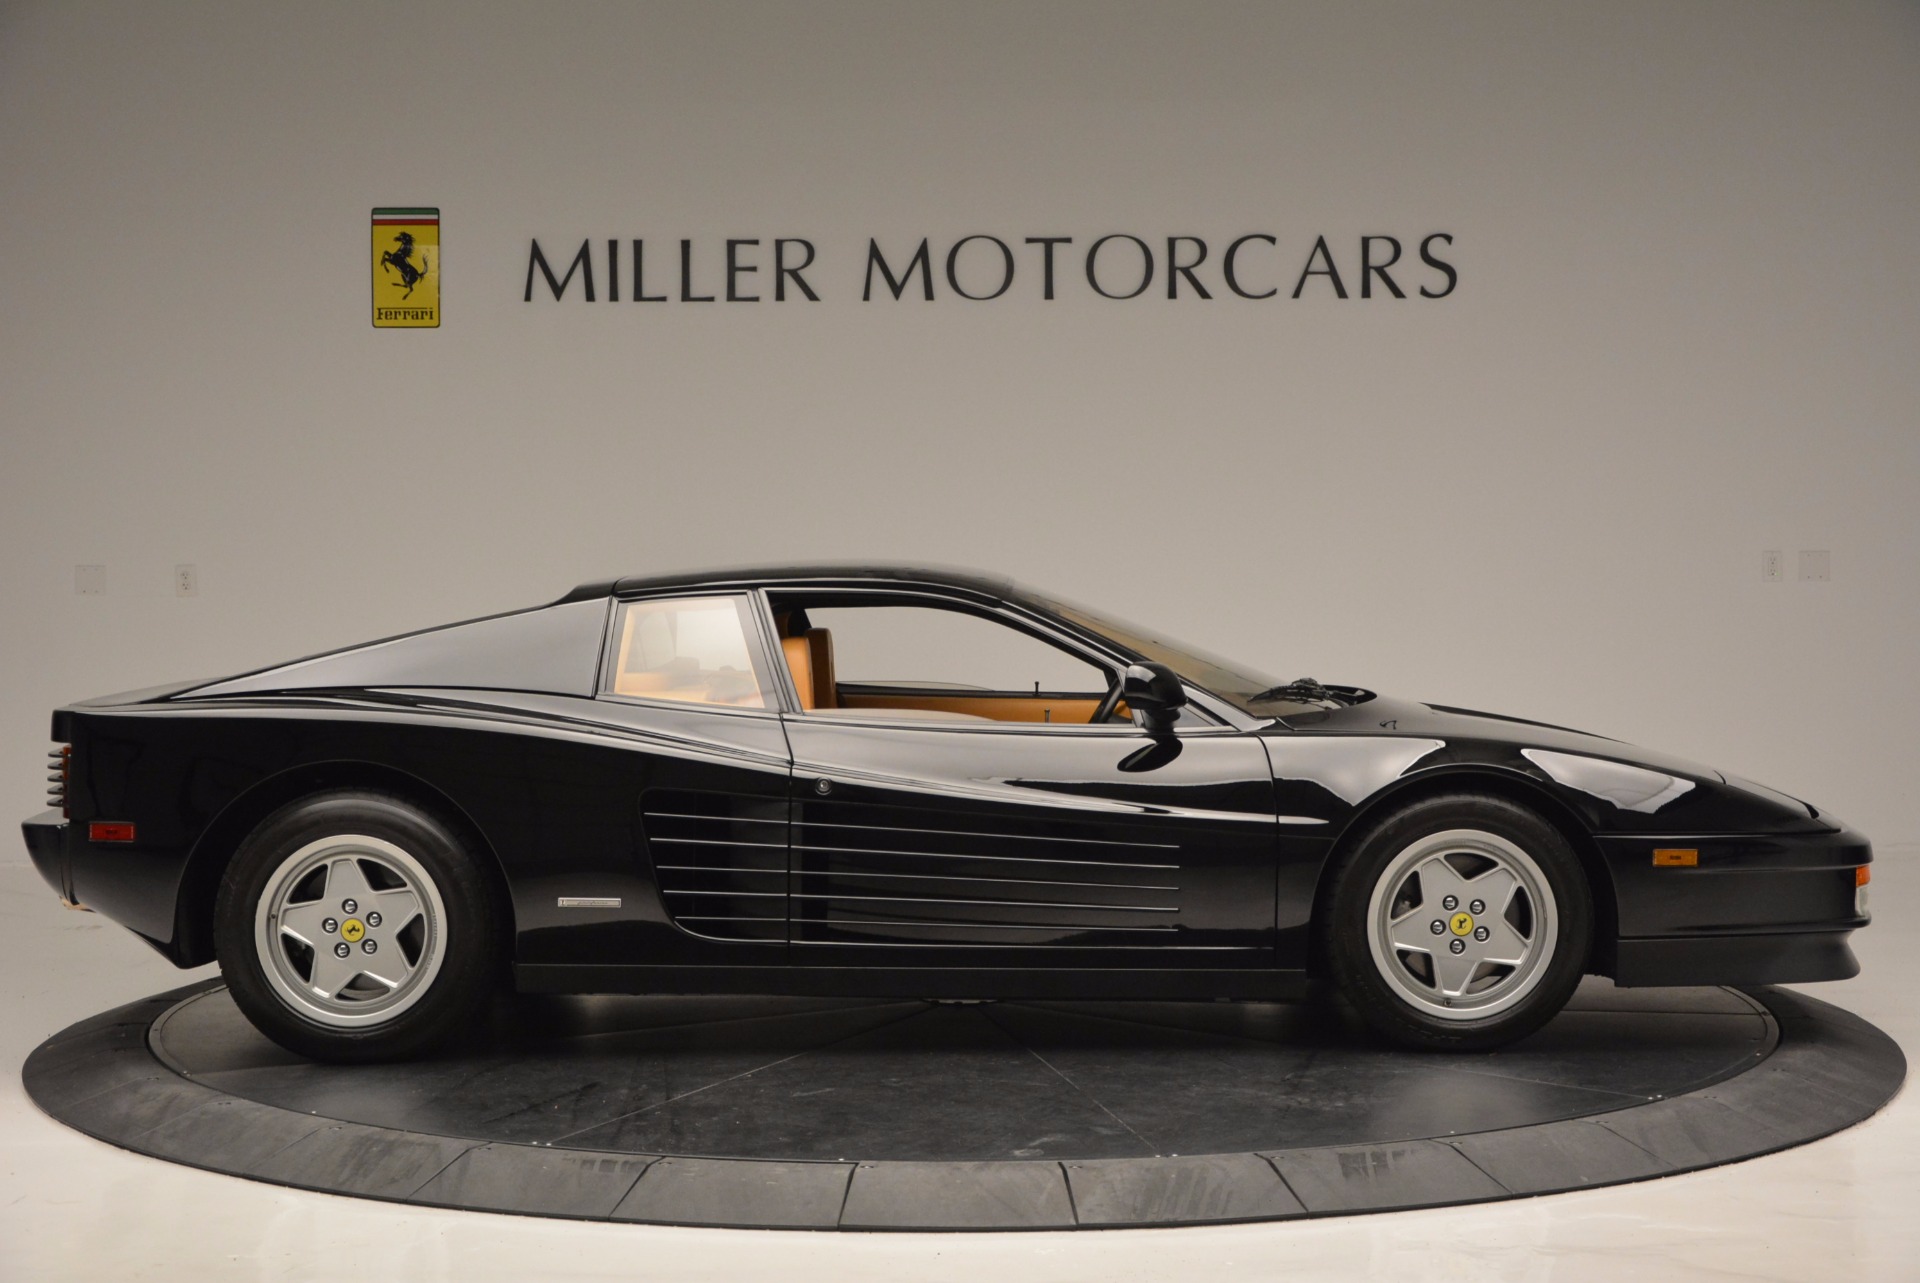 Pre Owned 1989 Ferrari Testarossa For Sale Miller Motorcars Stock 4343